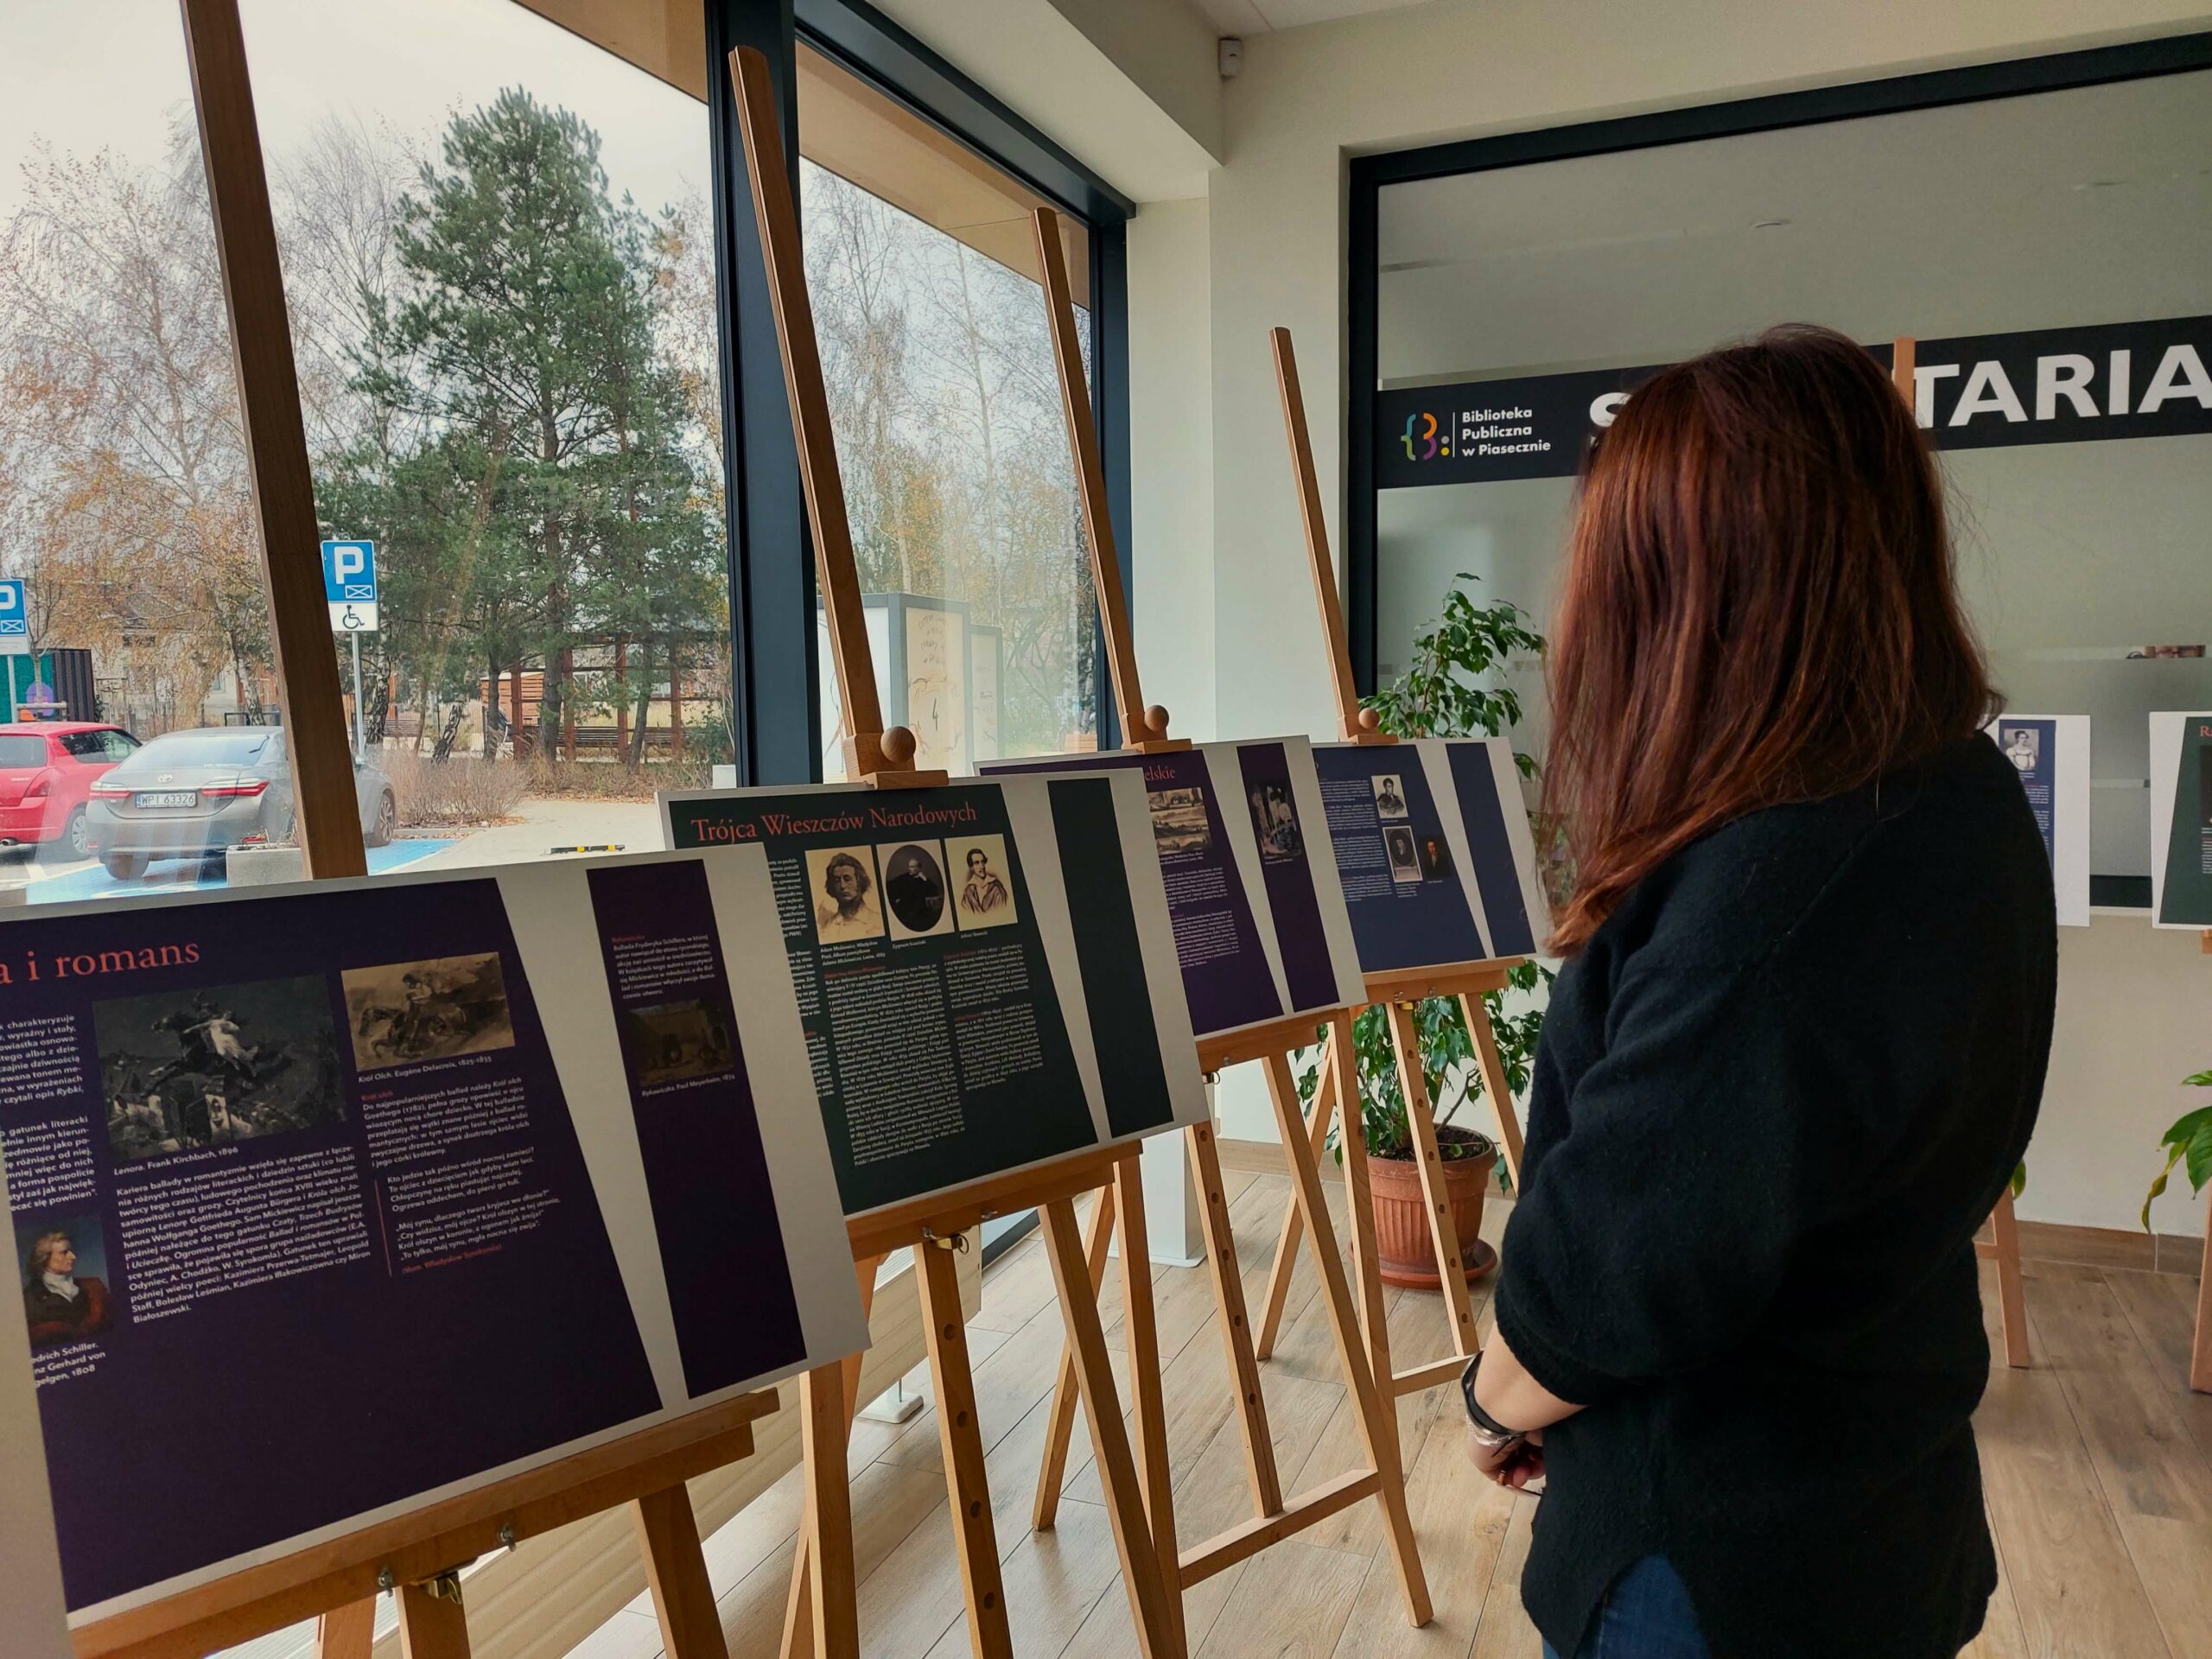 Na zdjęciu widoczna wystawa "Ballady i Romanse" z prawej strony stoi kobieta oglądająca ekspozycję.